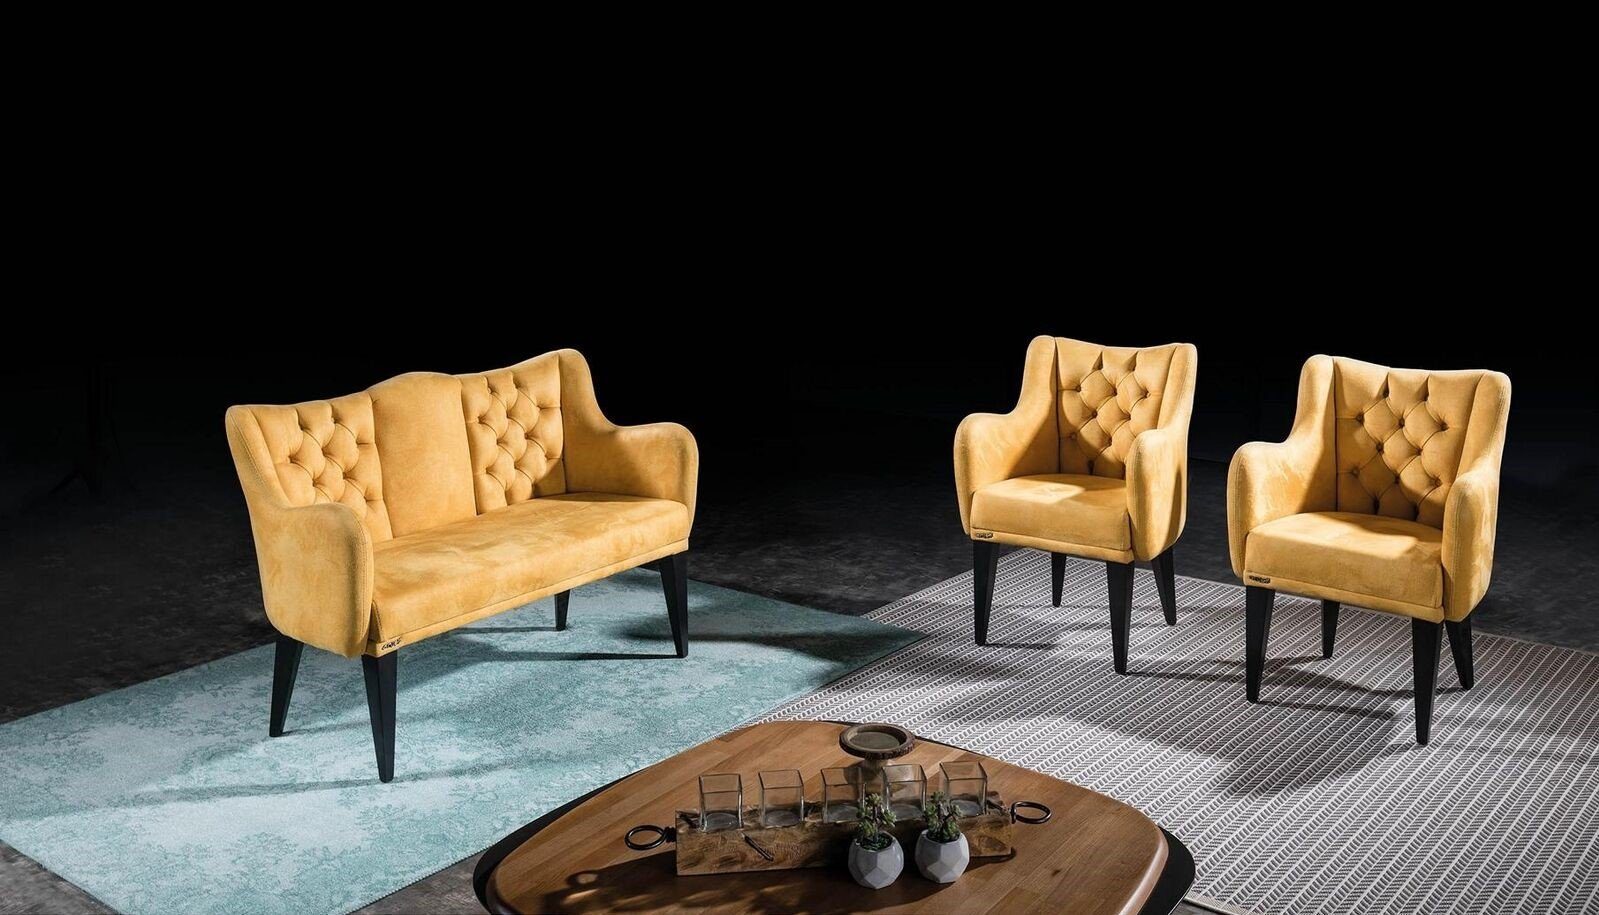 JVmoebel Sofa Oranger Wohnzimmer Zweisitzer Luxus Sofas Polster Stil Modern, 1 Teile, Made in Europa